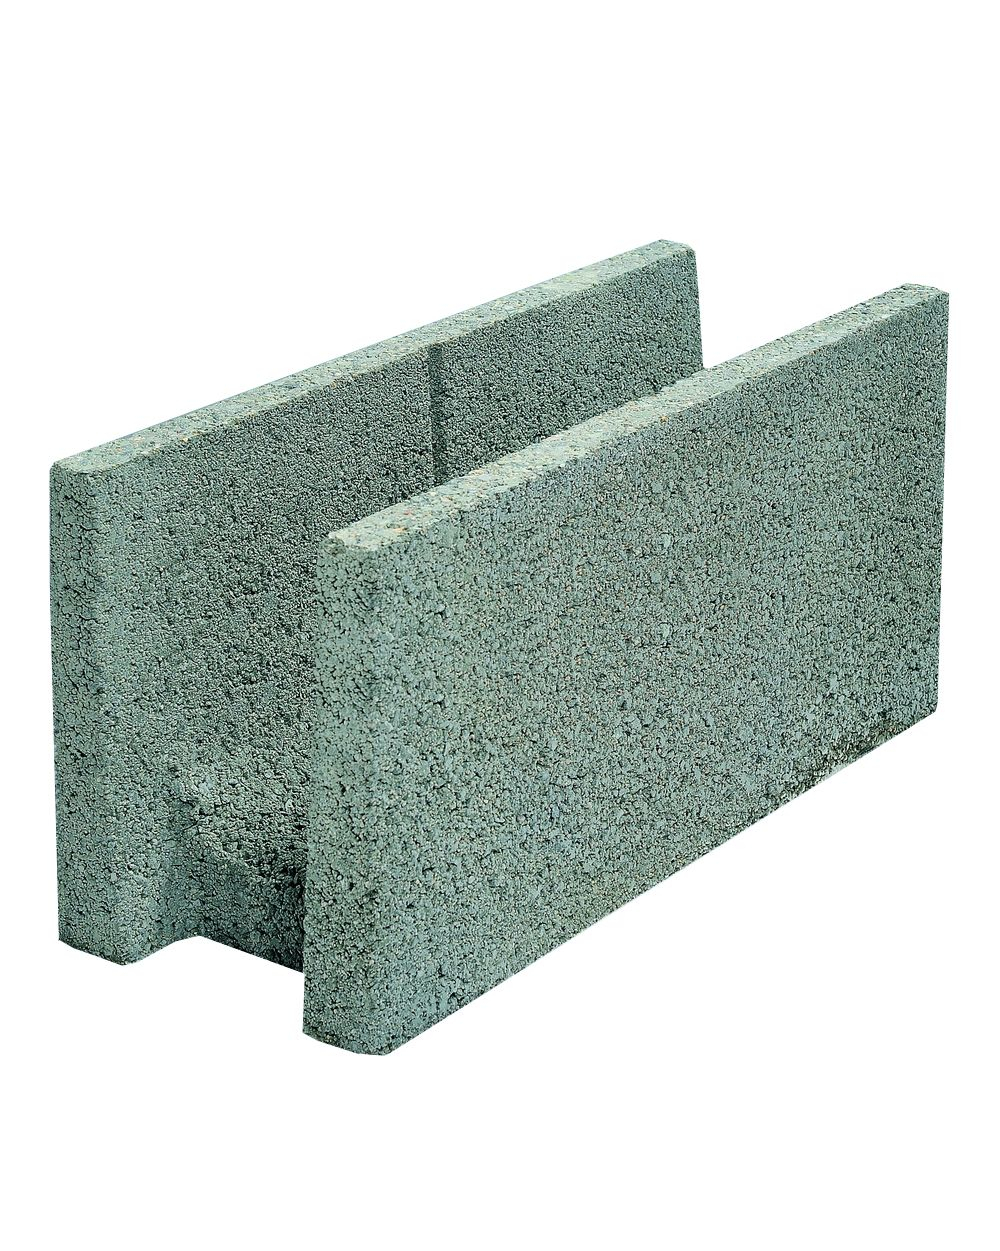 bloc-beton-chainage-u-150x200x500mm-nf-edycem-0